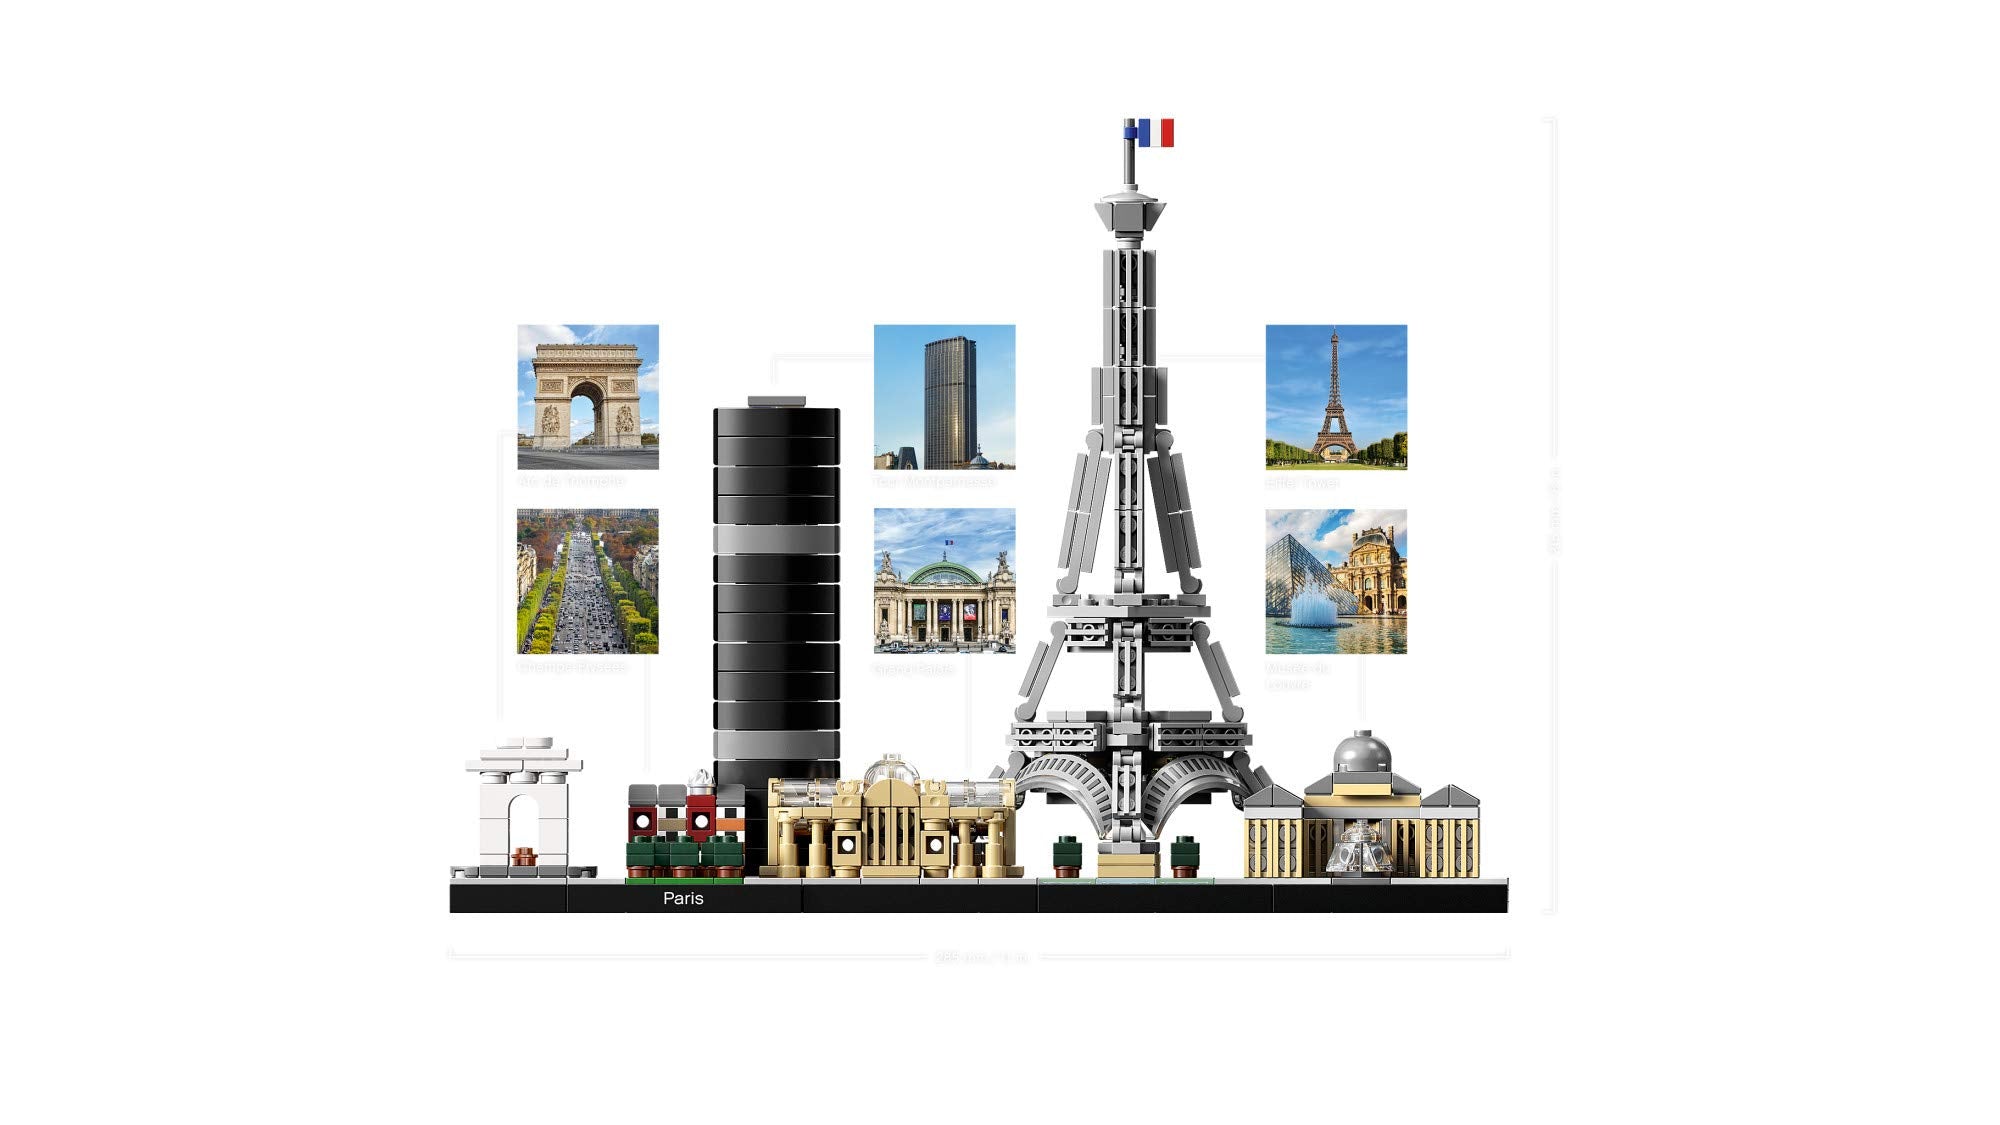 LEGO Architecture Skyline Collection 21044 Paris Building Kit (694 Piece)